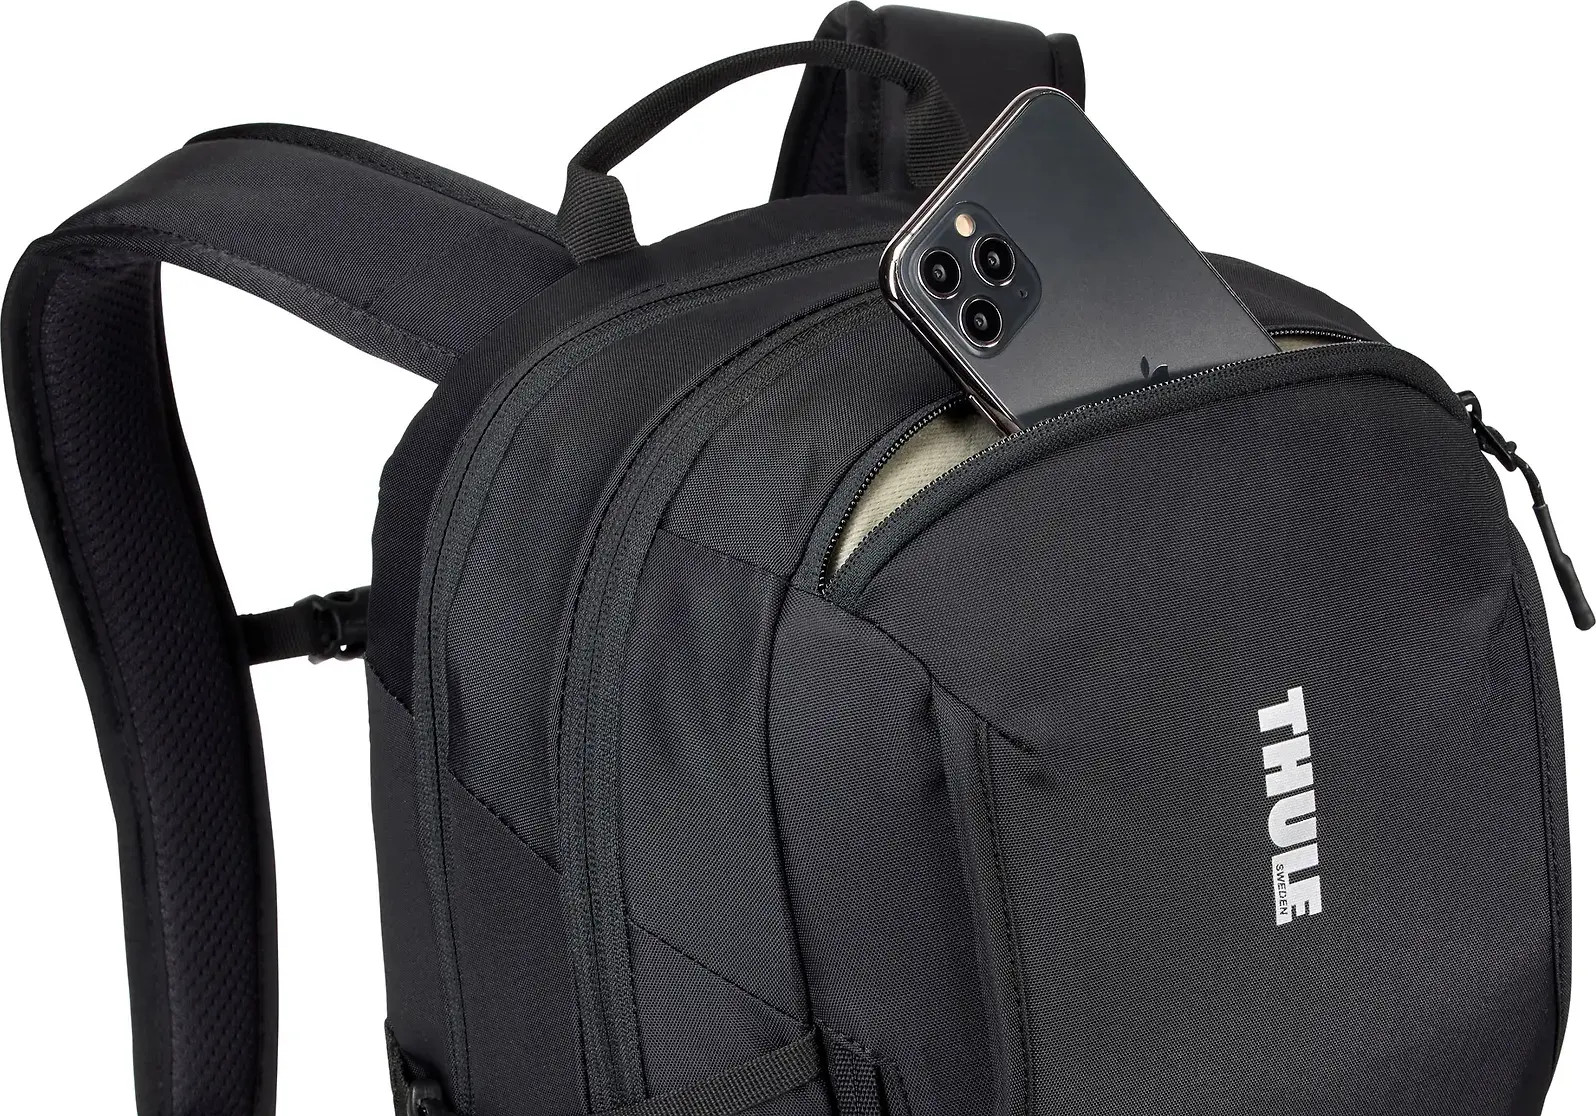 Thule Sweden Black Laptop Backpack